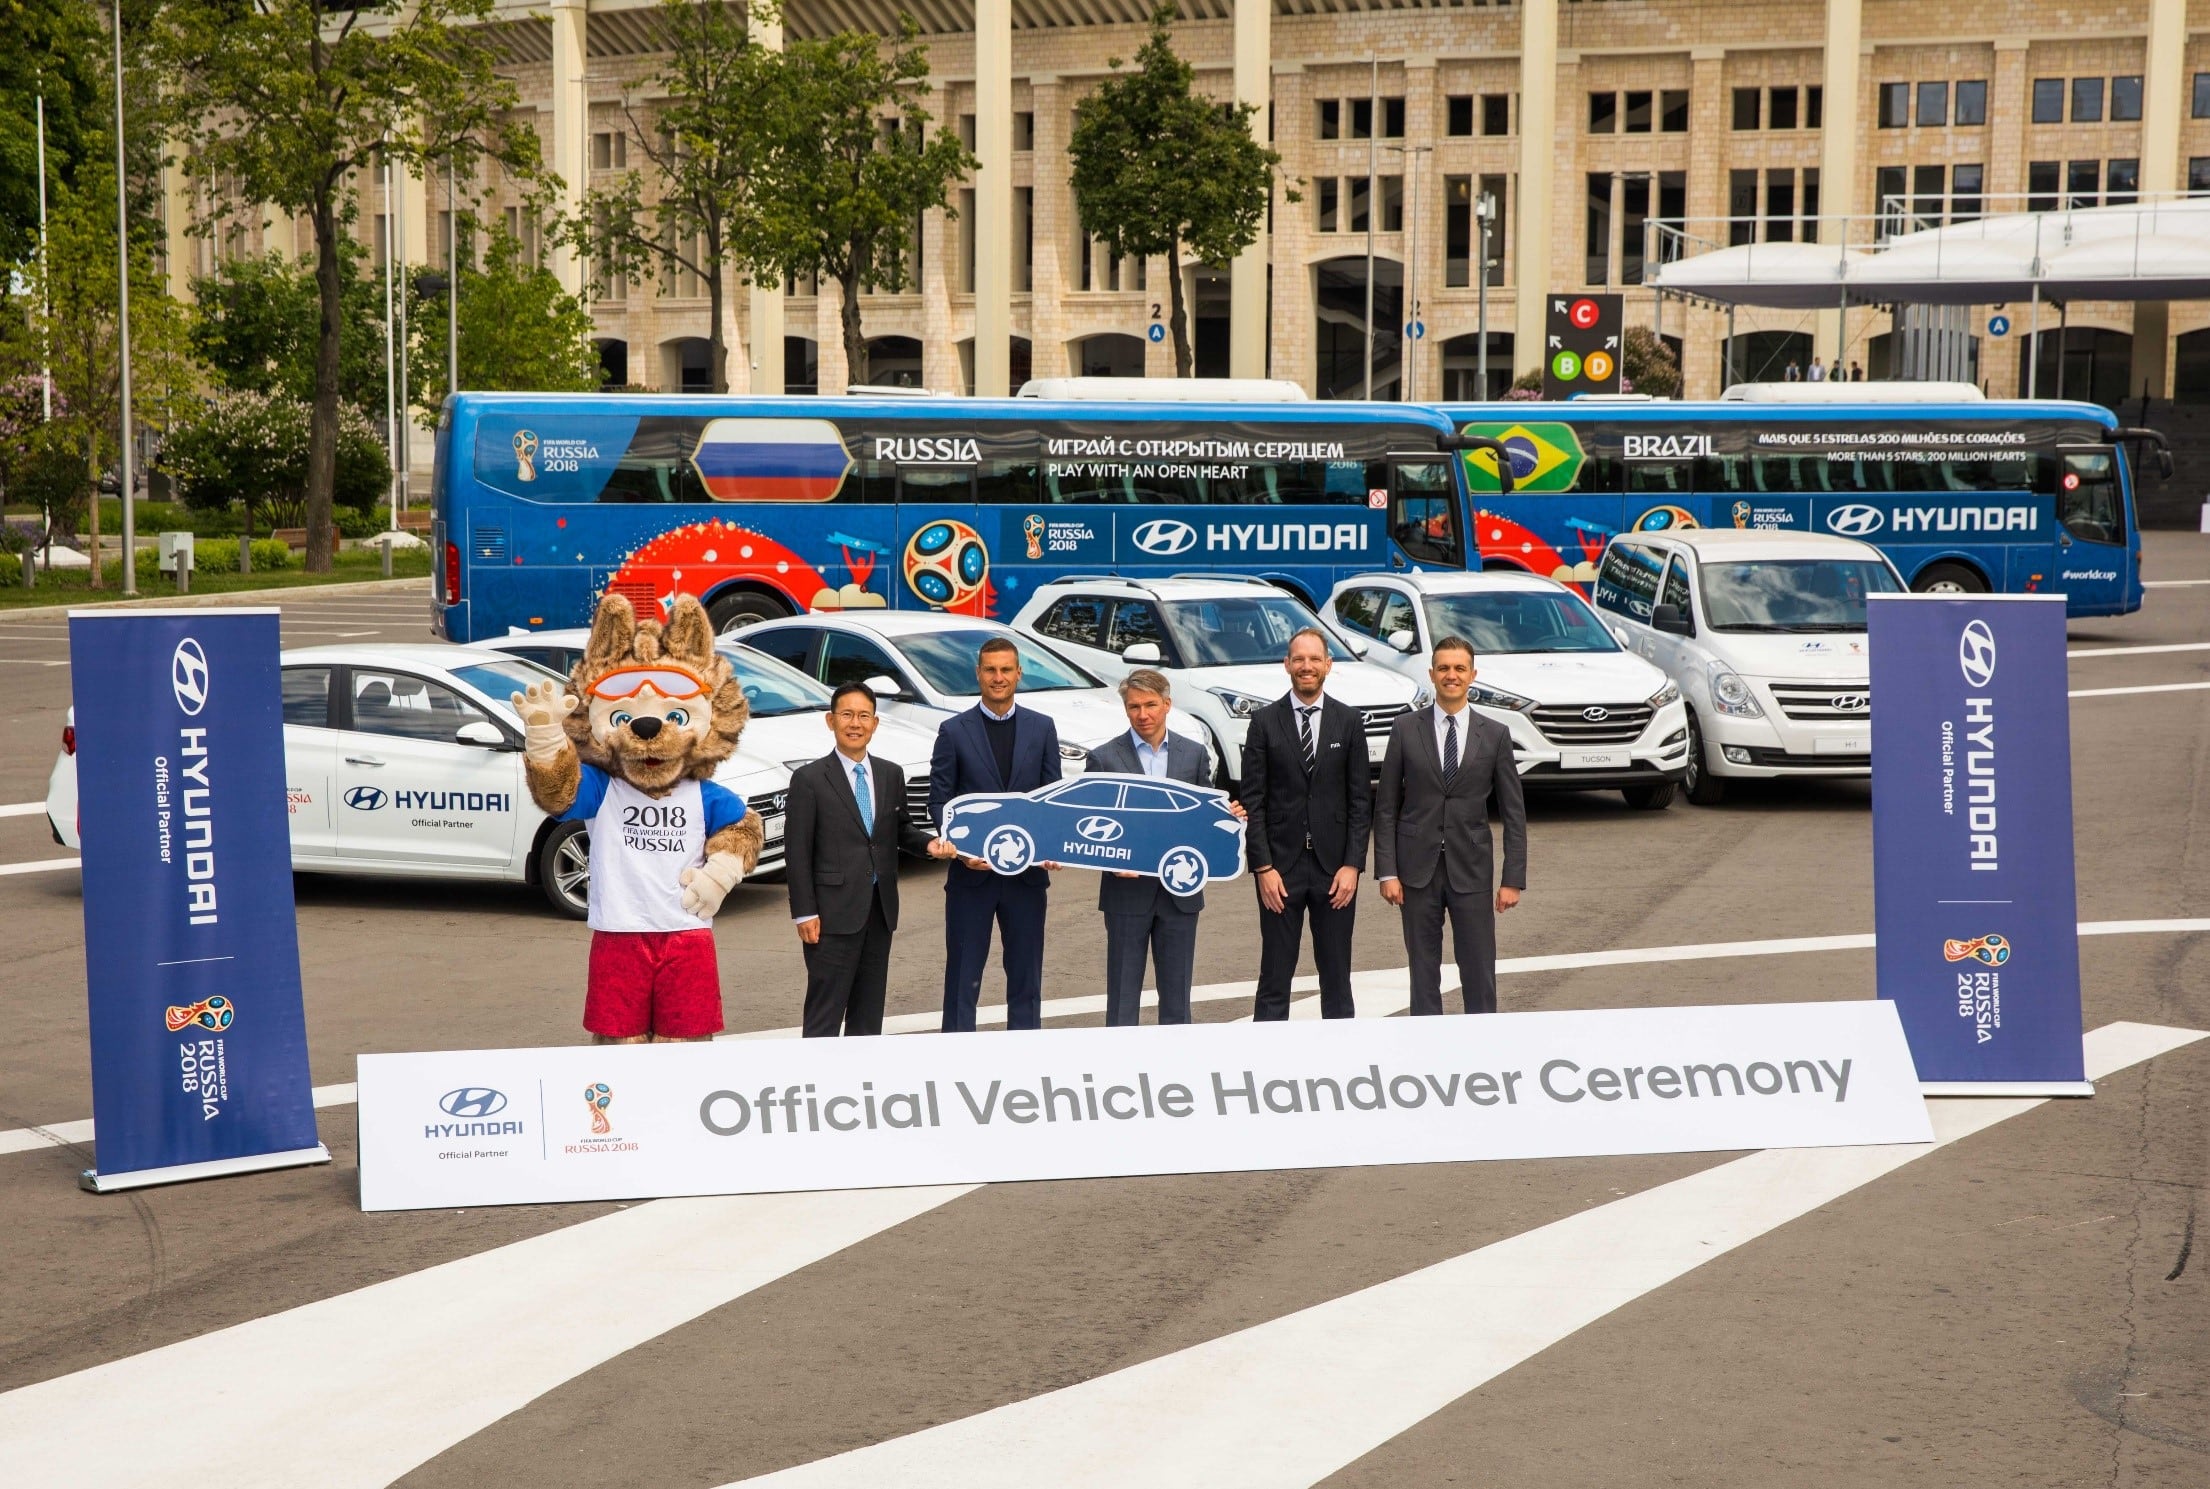 Компания Hyundai Motor передала автомобили для крупнейшего в мире спортивного события — Чемпионата мира по футболу FIFA 2018™